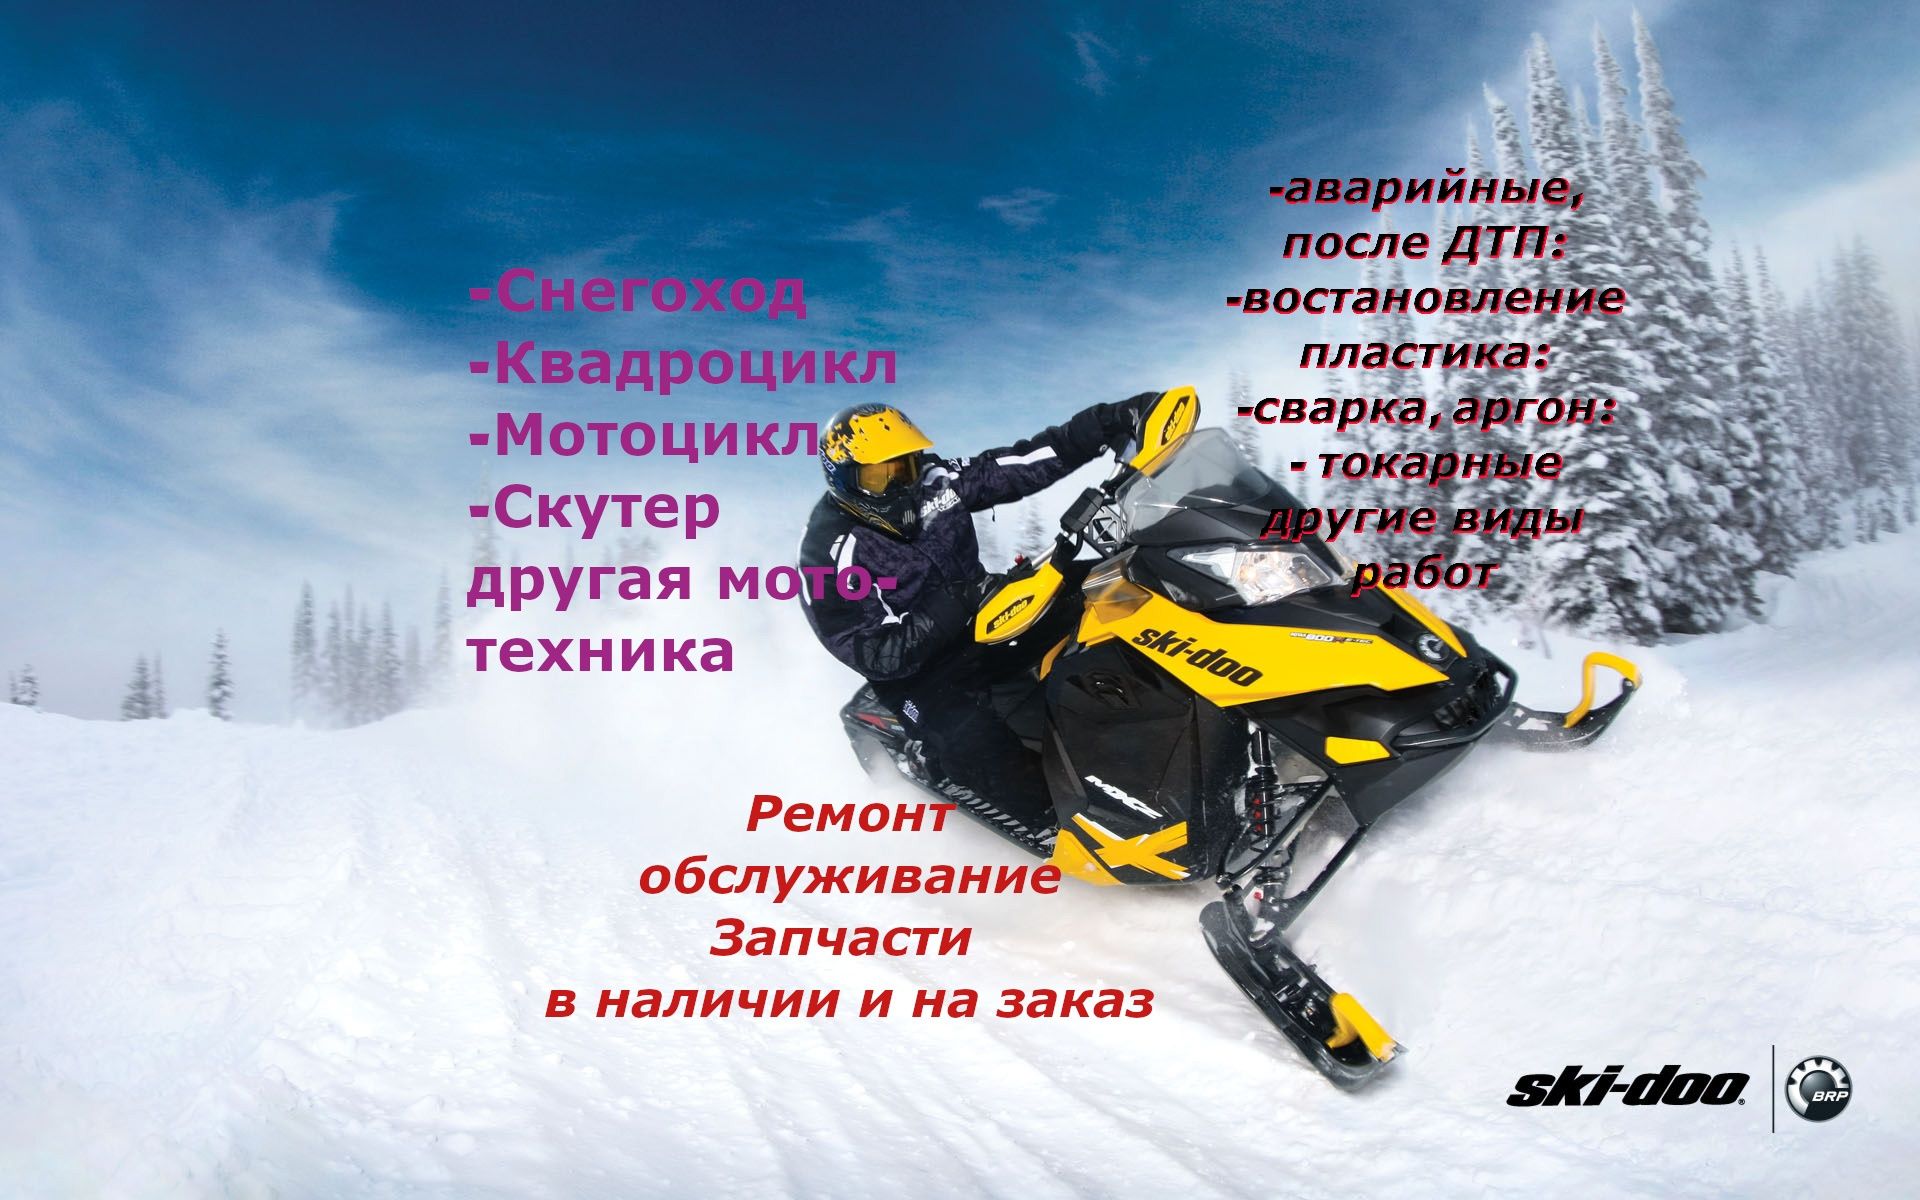 Квадроцикл. Мотоцикл. Снегоход и прочая мототехника. Ремонт.